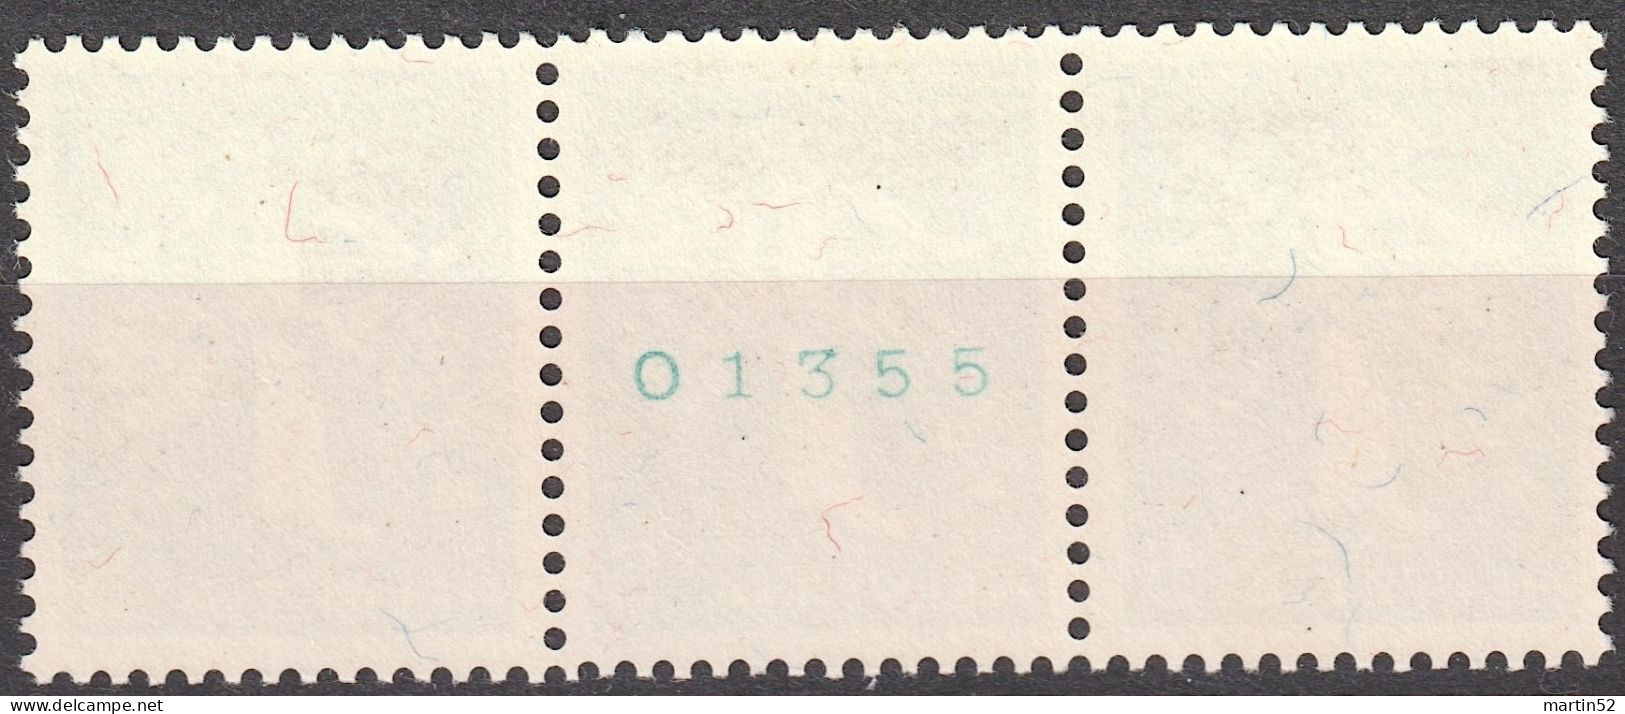 Schweiz Suisse 1939: 3er-Streifen Landi-Rollenmarken Zu Z25c Mi W12 Mit N° O1355 **/* MNH/MLH (Zu CHF 14.50) - Rouleaux